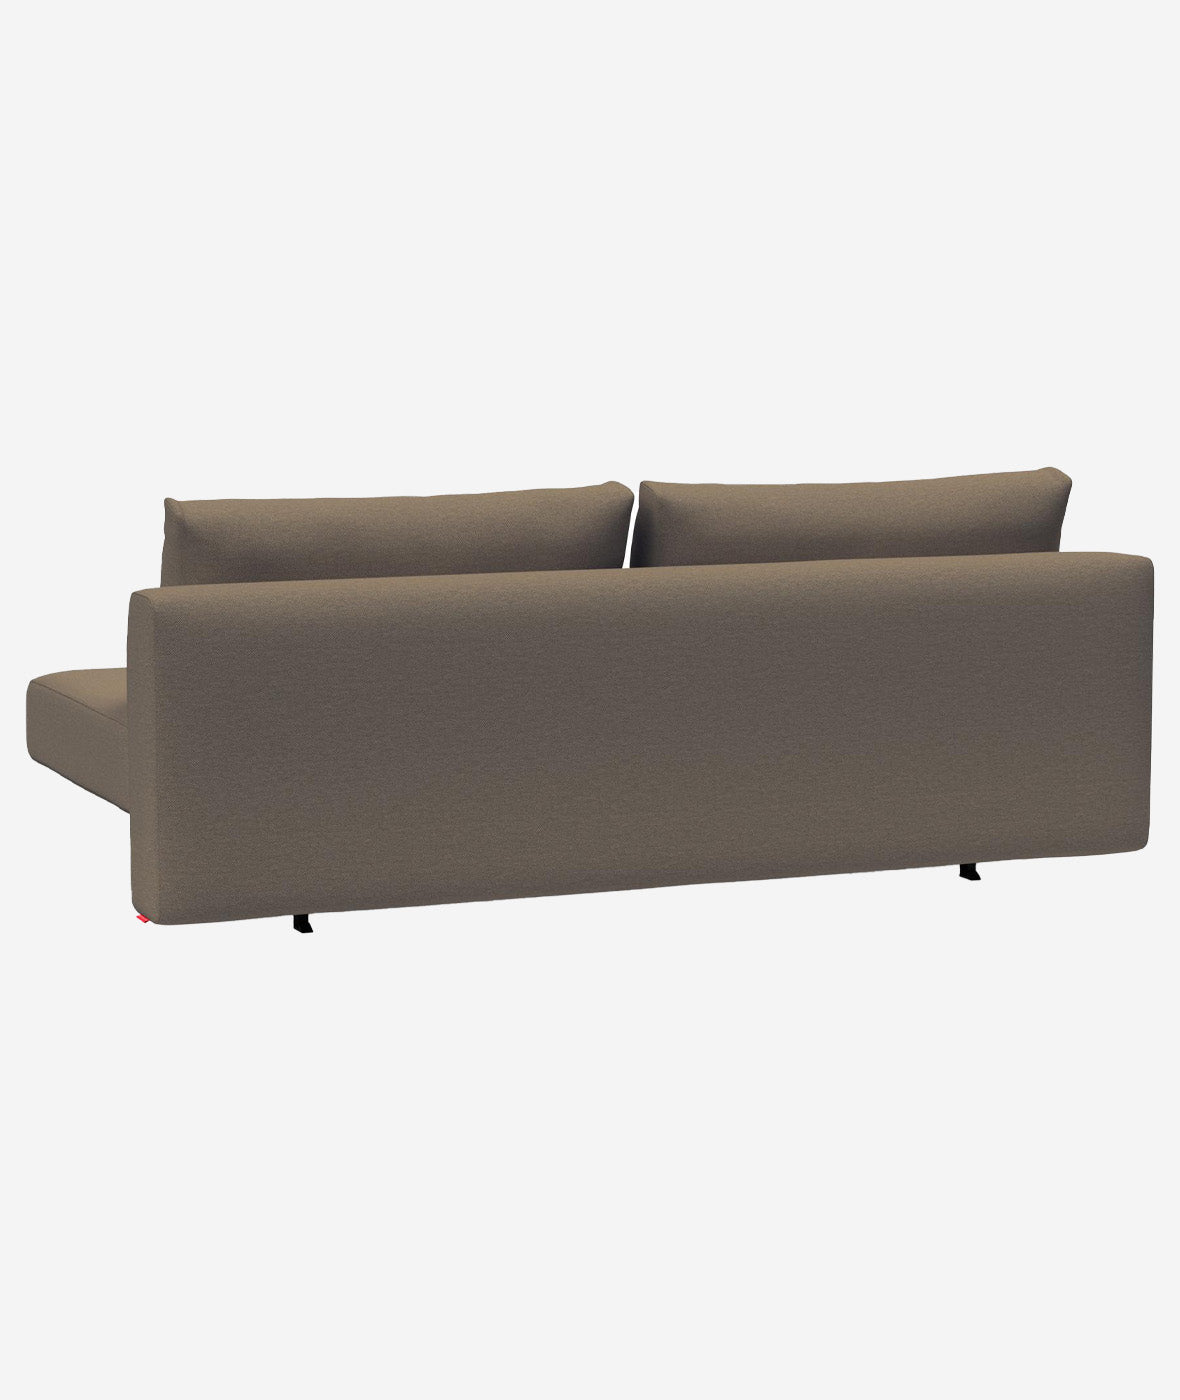 Conlix Sleeper Sofa - More Options